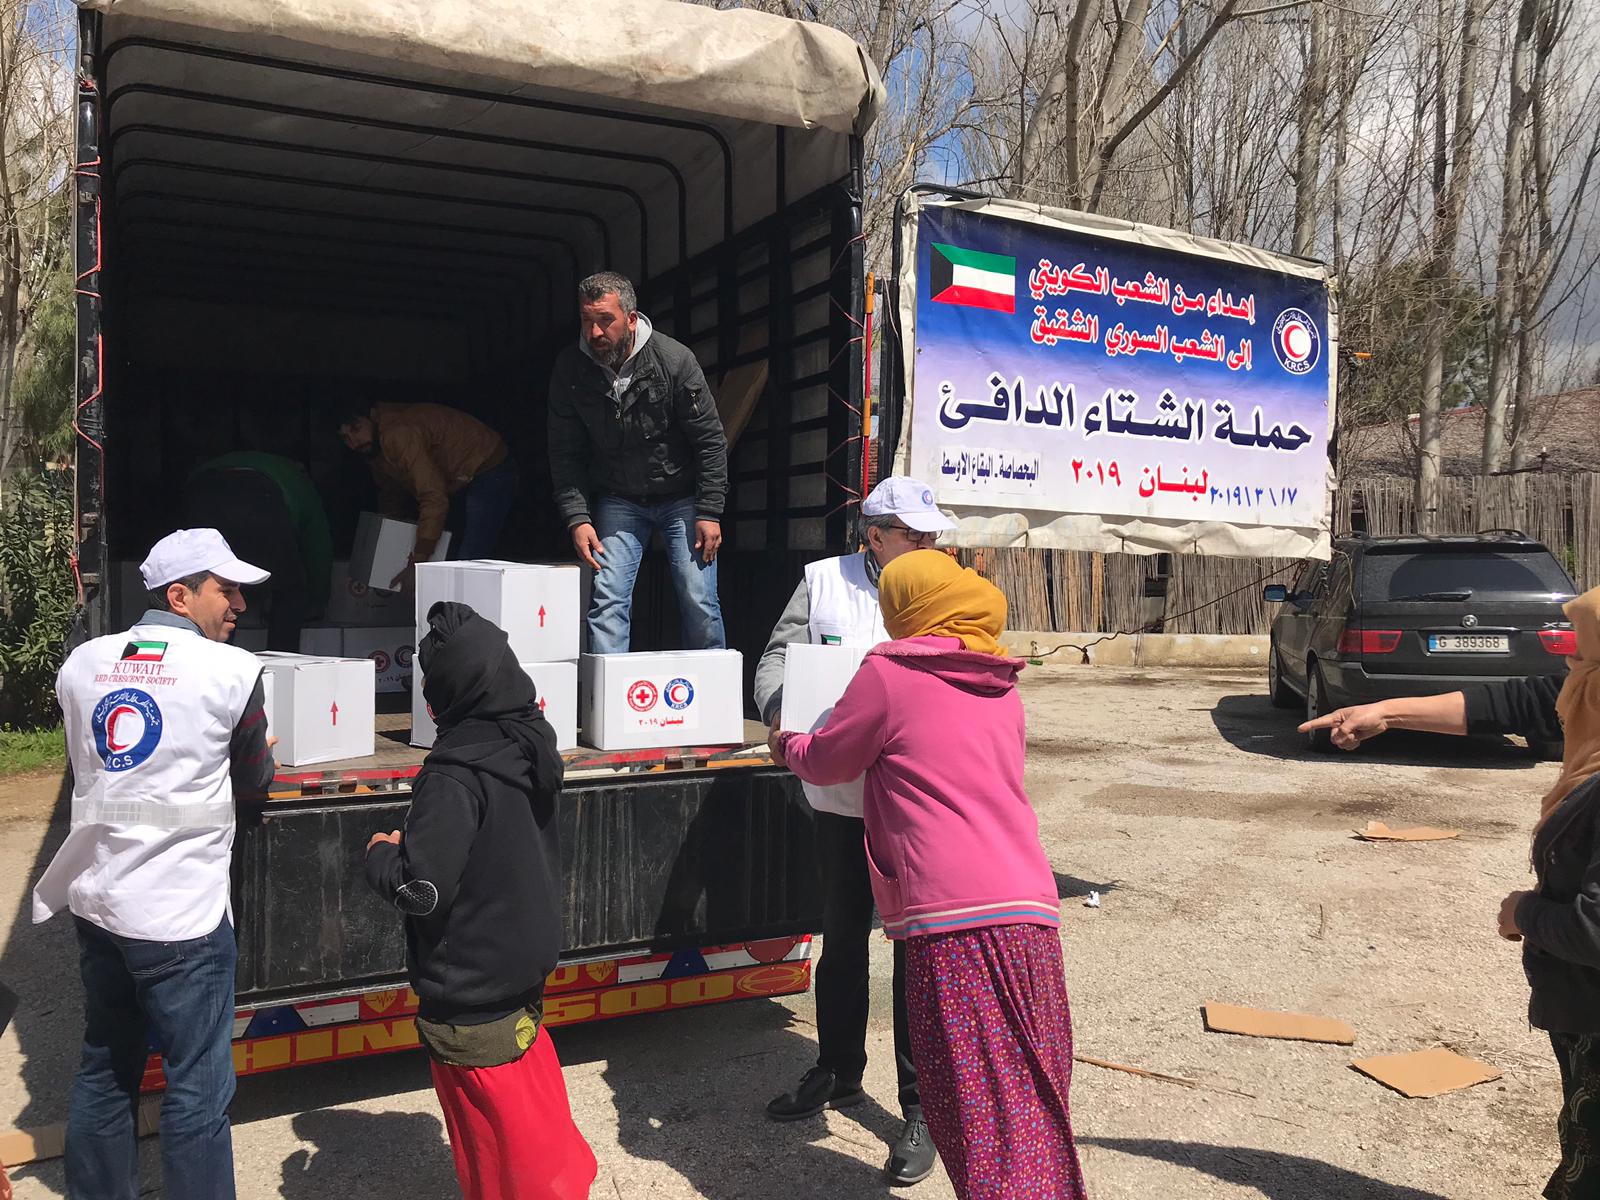 الهلال الاحمر الكويتي يوزع المساعدات الانسانية على اللاجئين السوريين في البقاع شرق لبنان